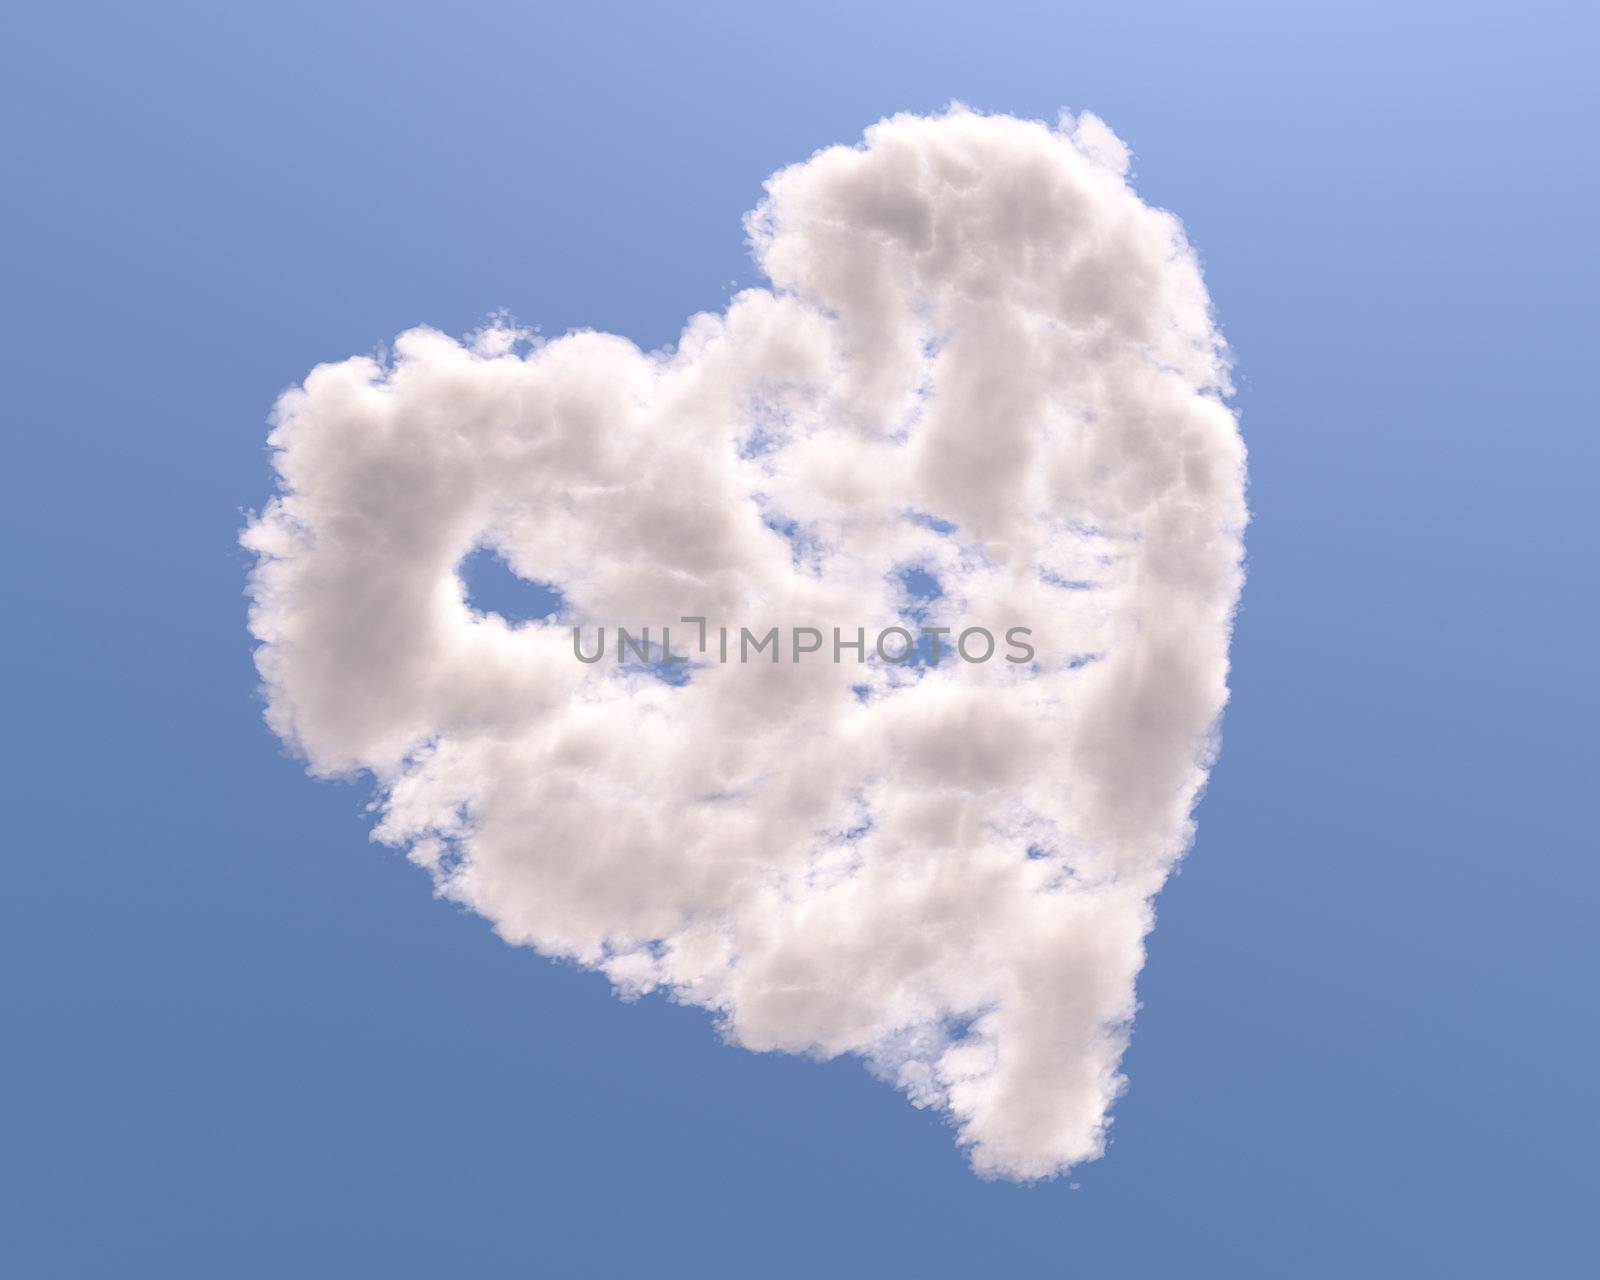 Heart shaped cloud by Zelfit